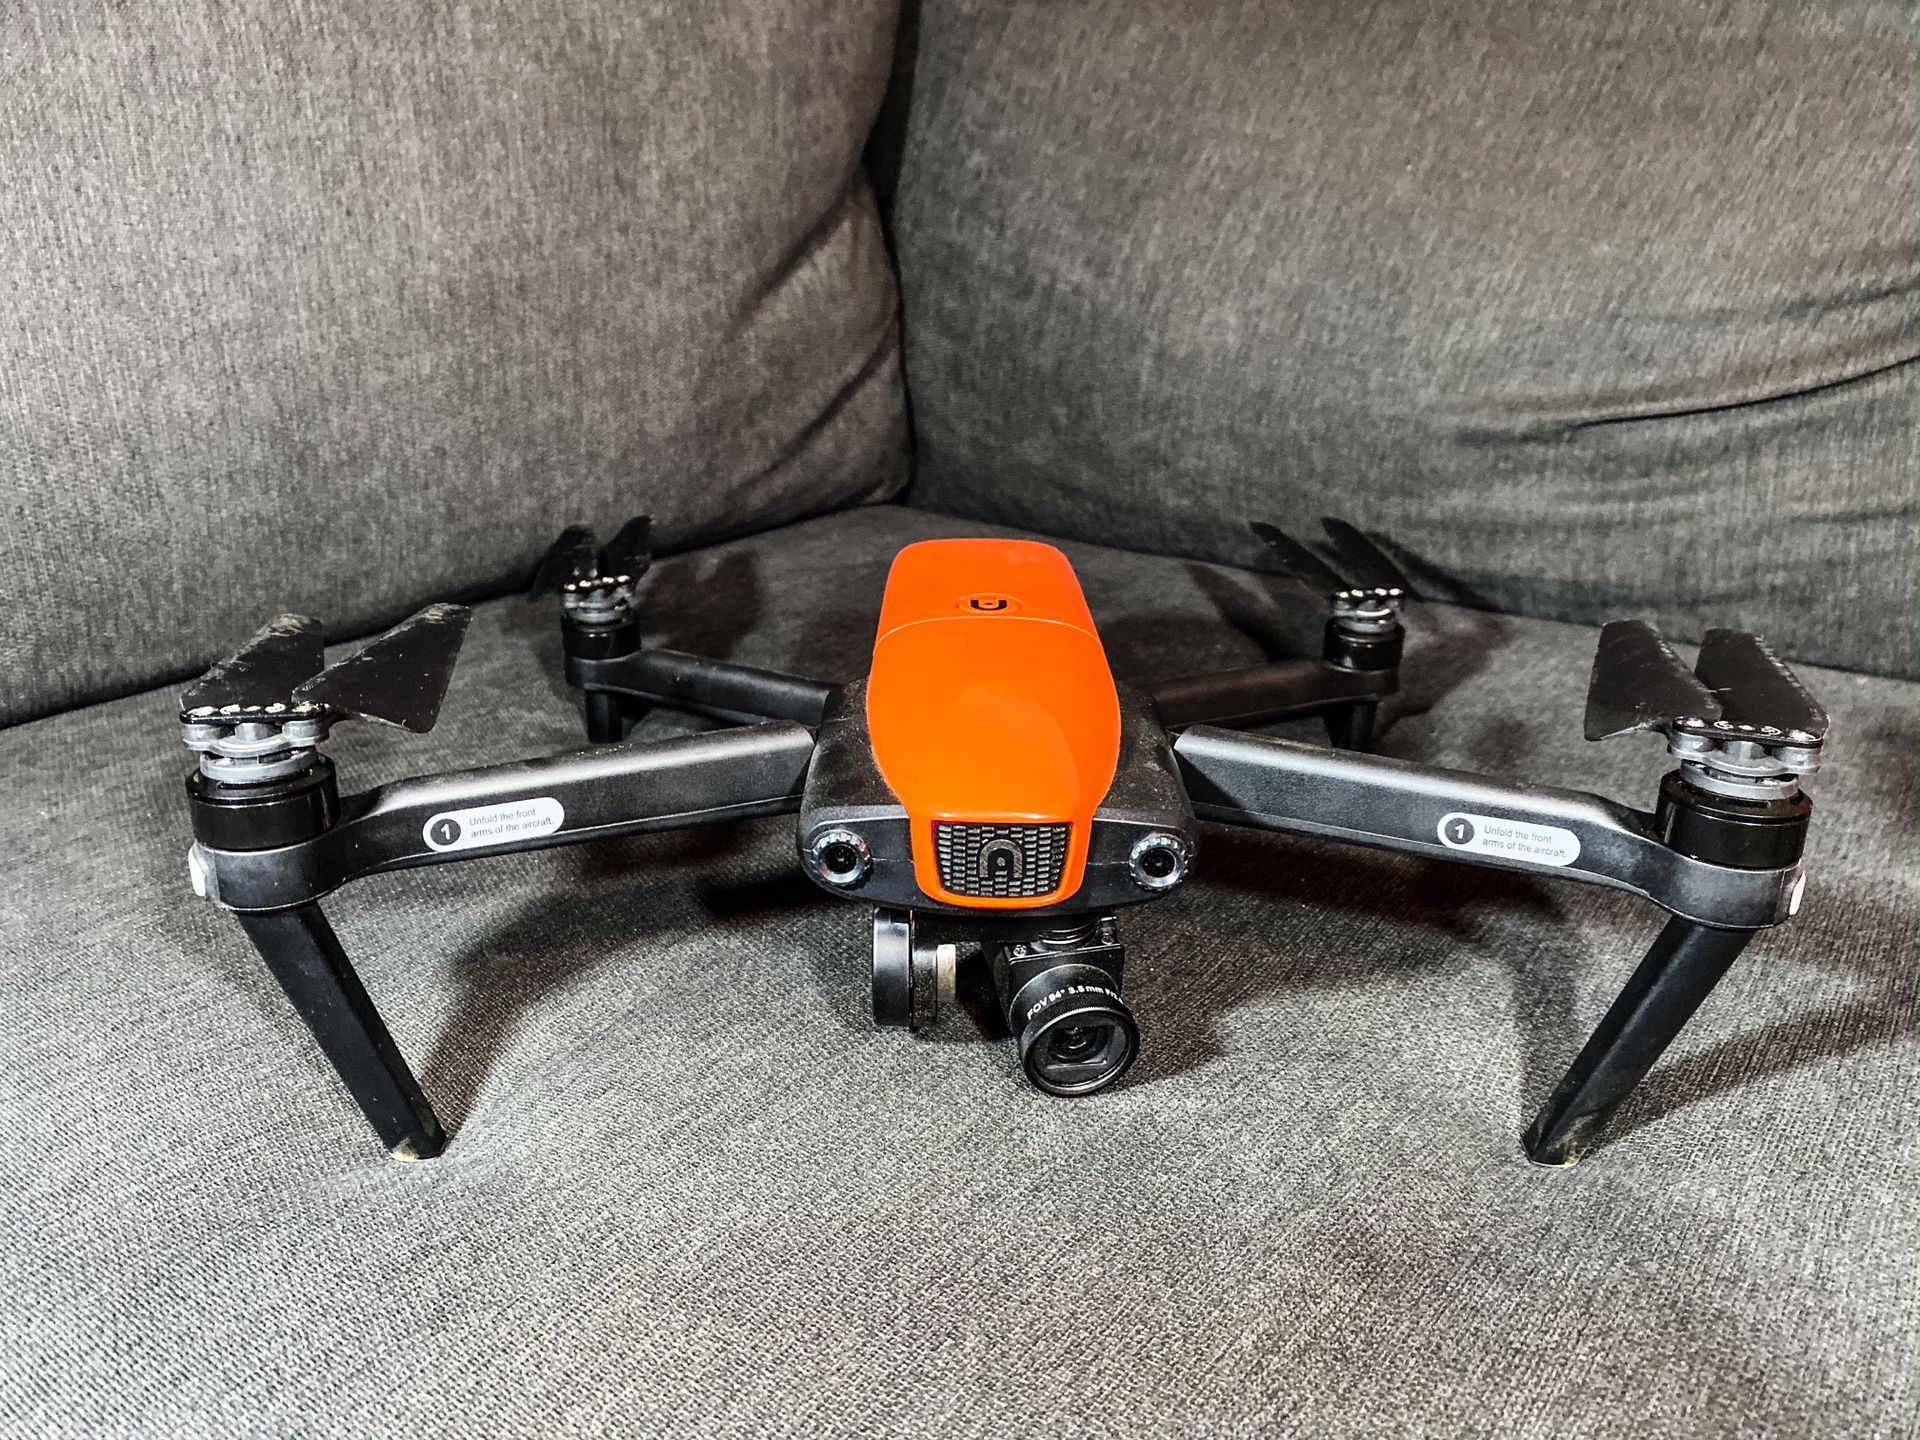 Autel Evo Drone 4K